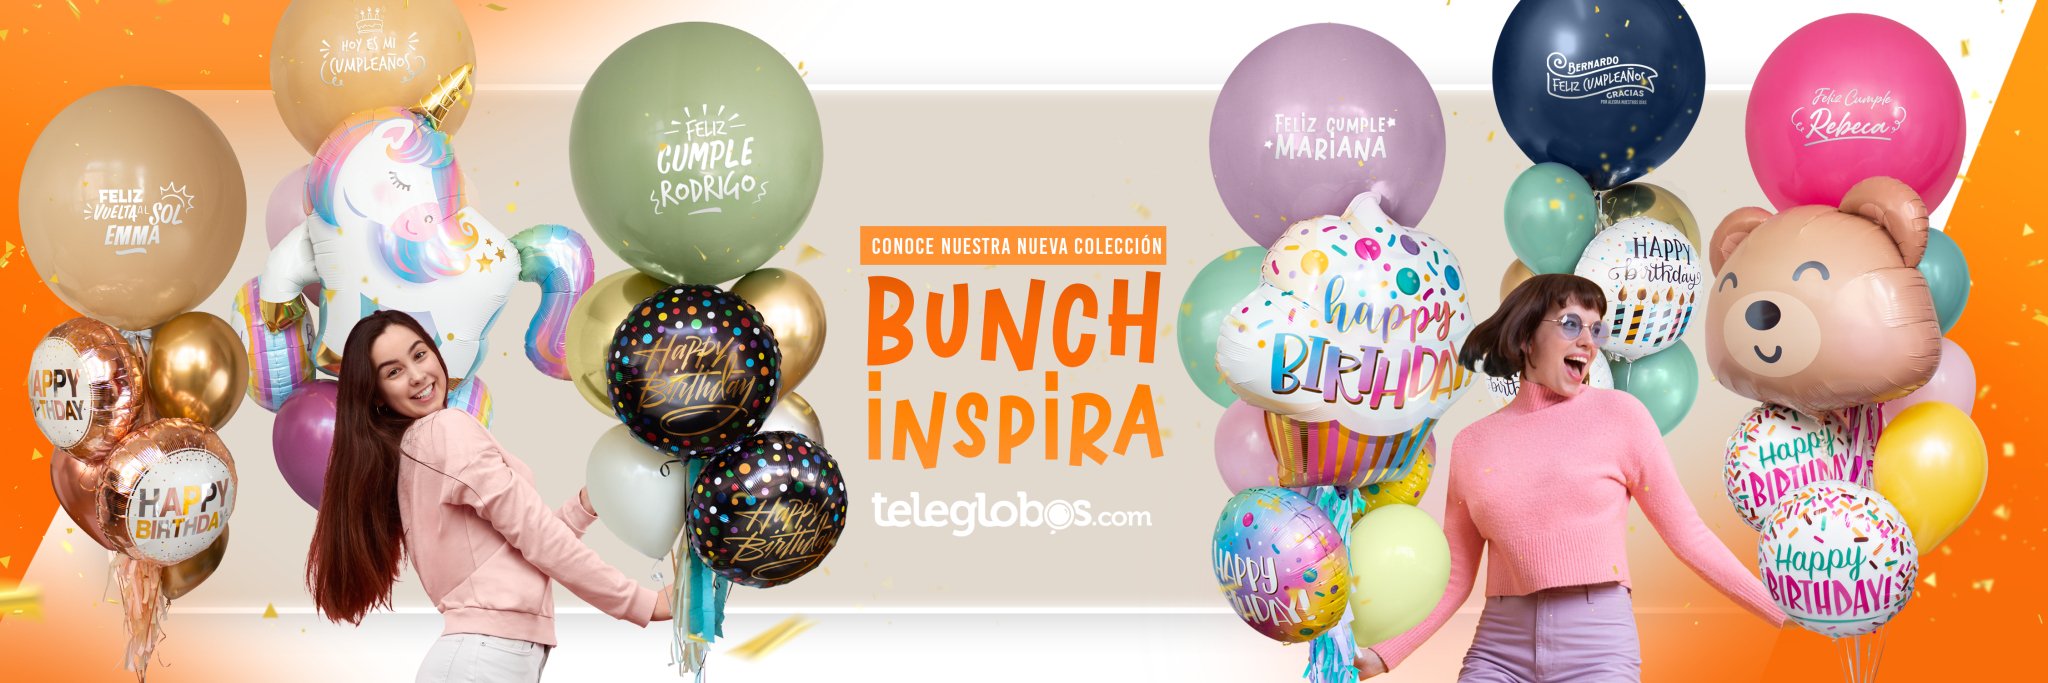 Teleglobos Globos con helio-mega-bunch-inspira-personalizados Ciudad de Mexico CDMX envío a domicilio 